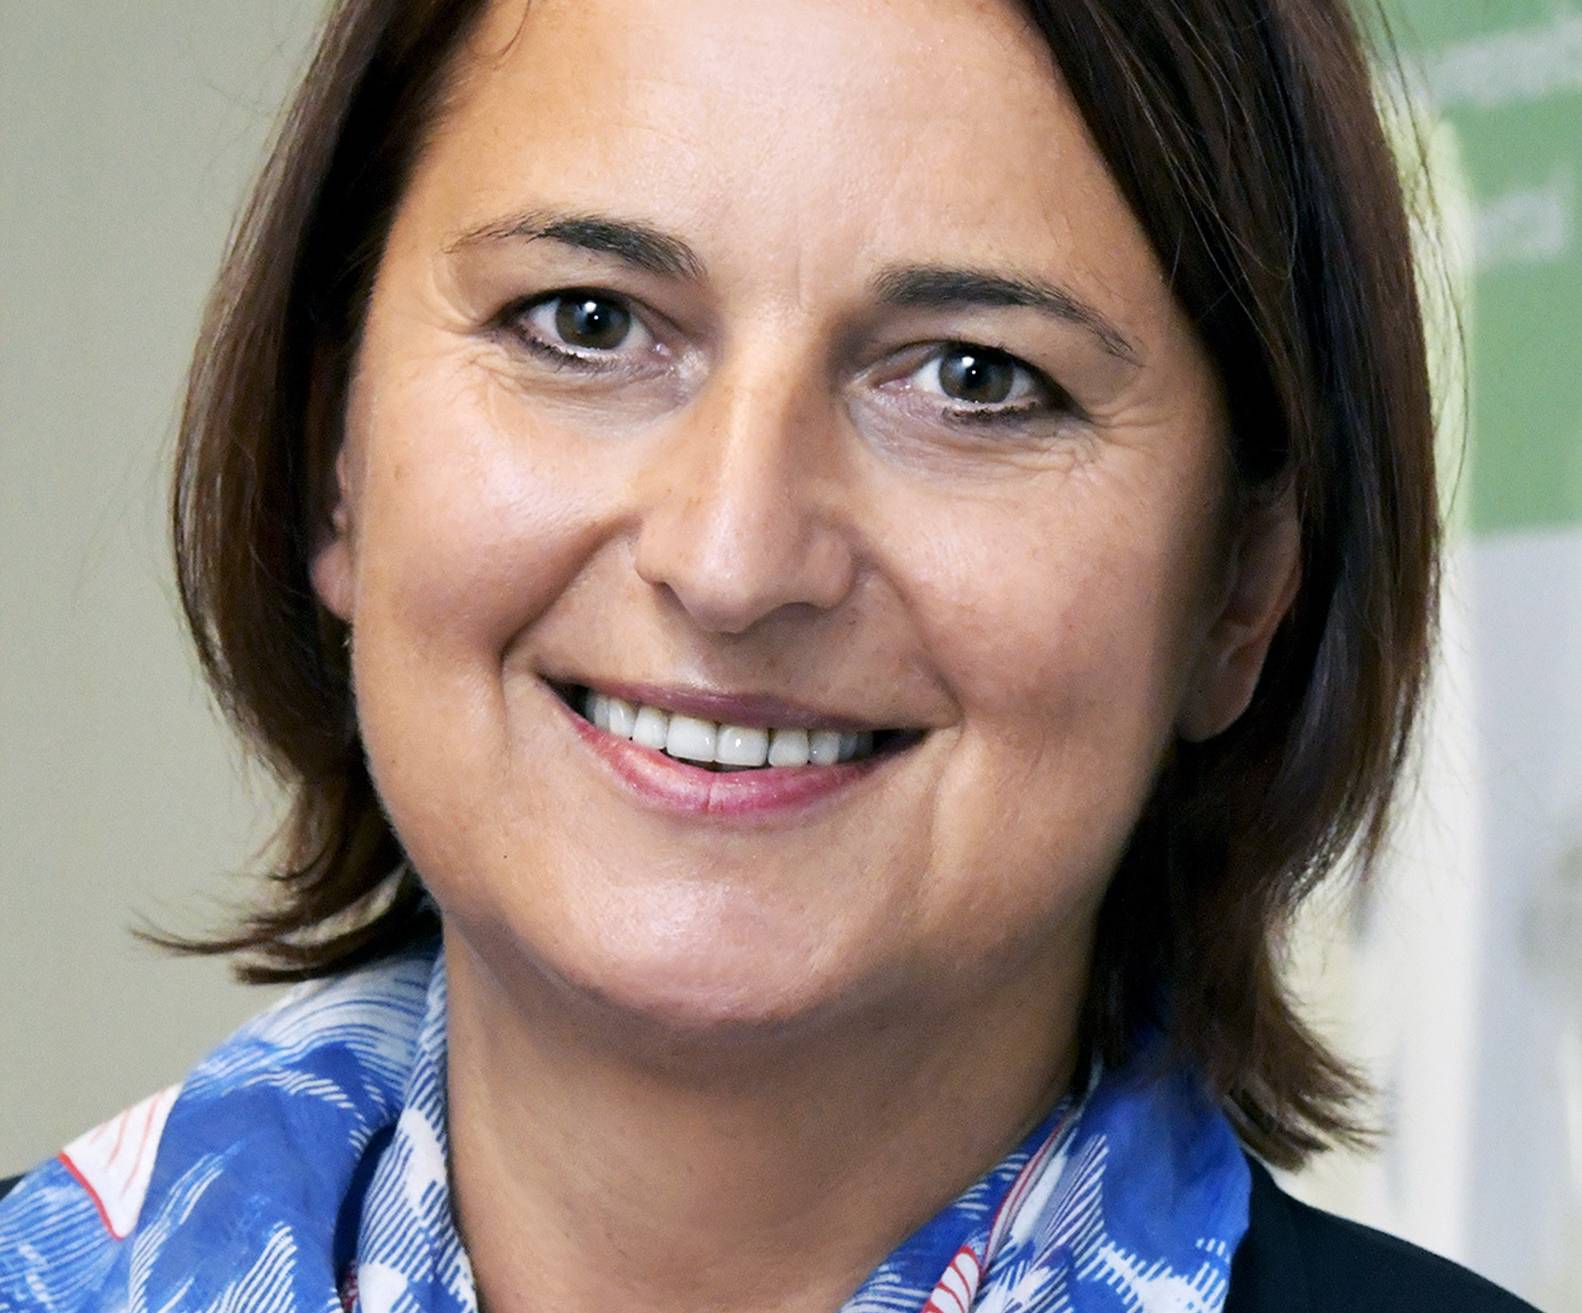  Prof. Dr. med. Vesna Bjelic-Radisic ist die Leiterin des Brustzentrums und der Abteilung Senologie am Helios Universitätsklinikum Wuppertal. 